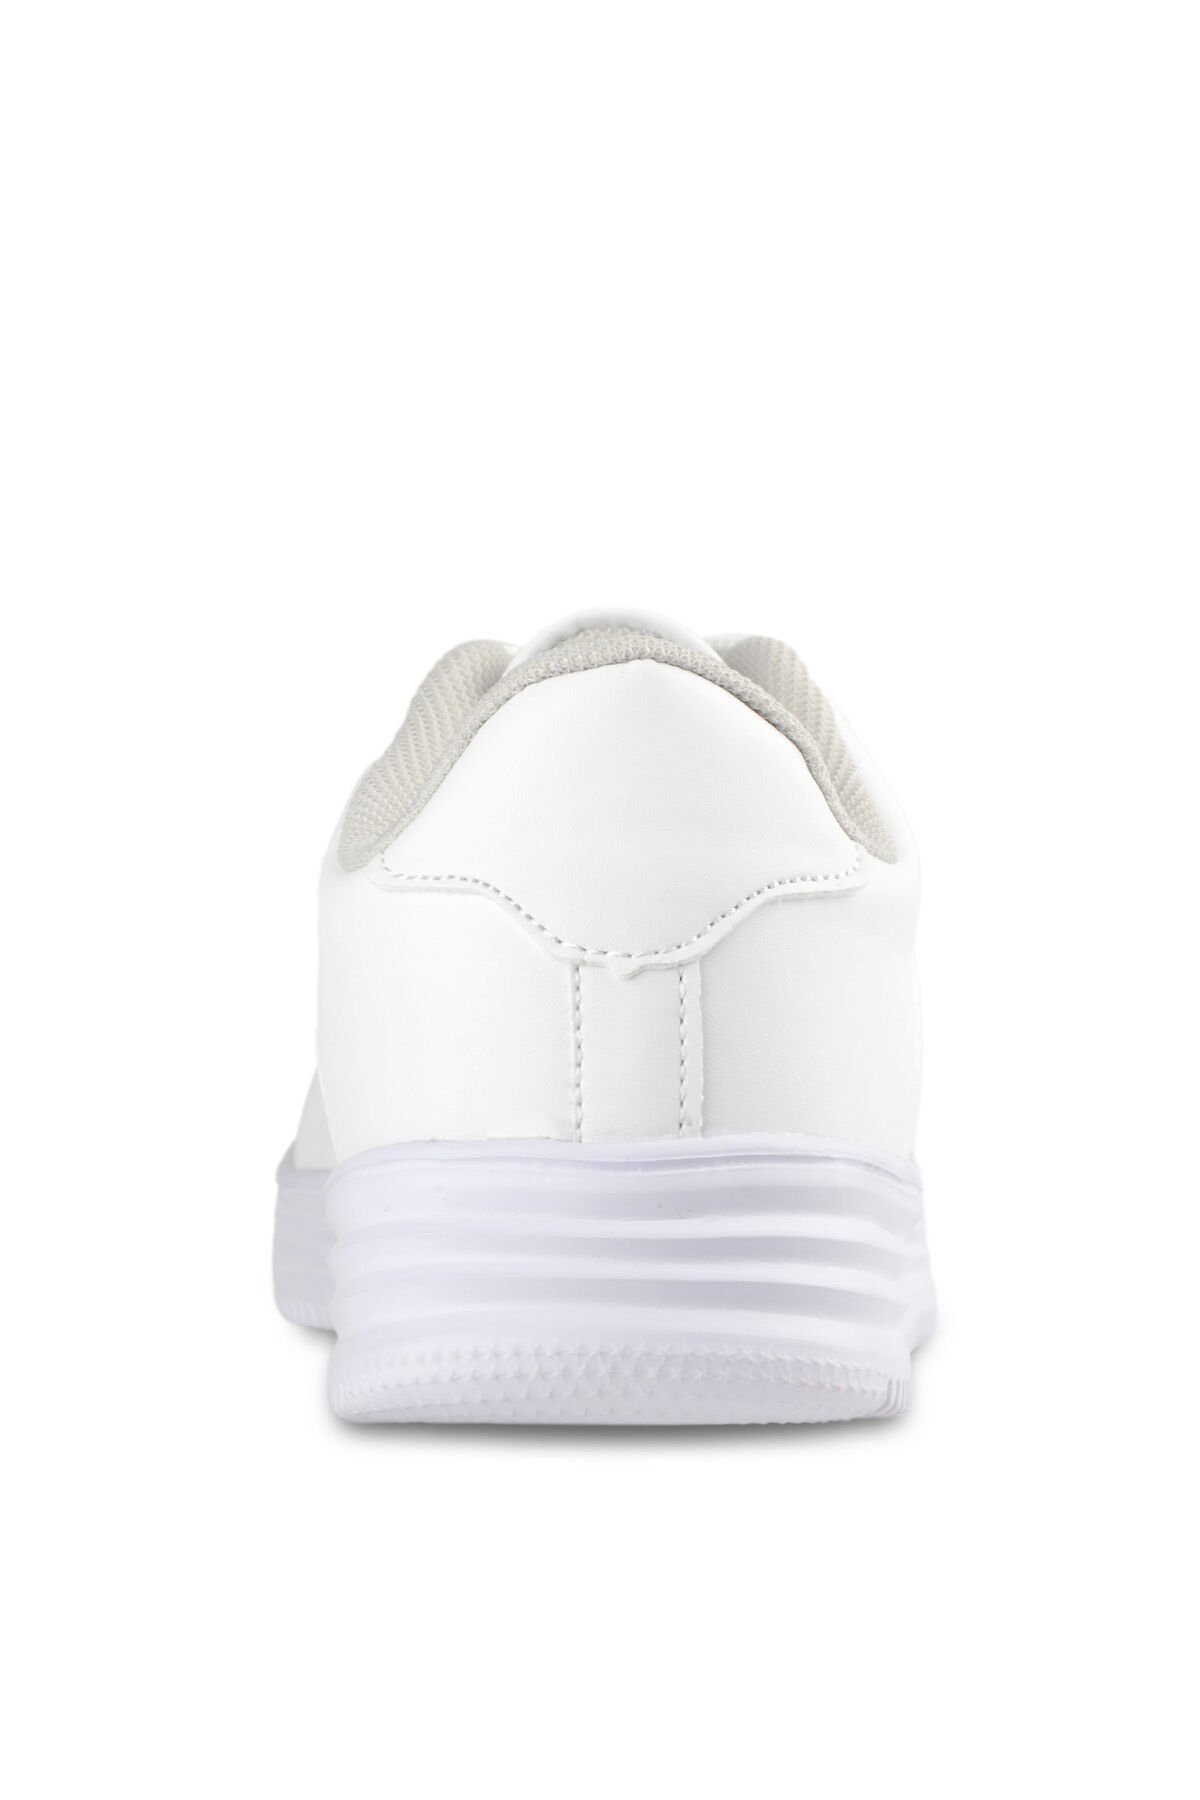 Slazenger CARBON Sneaker Kadın Ayakkabı Beyaz - Thumbnail